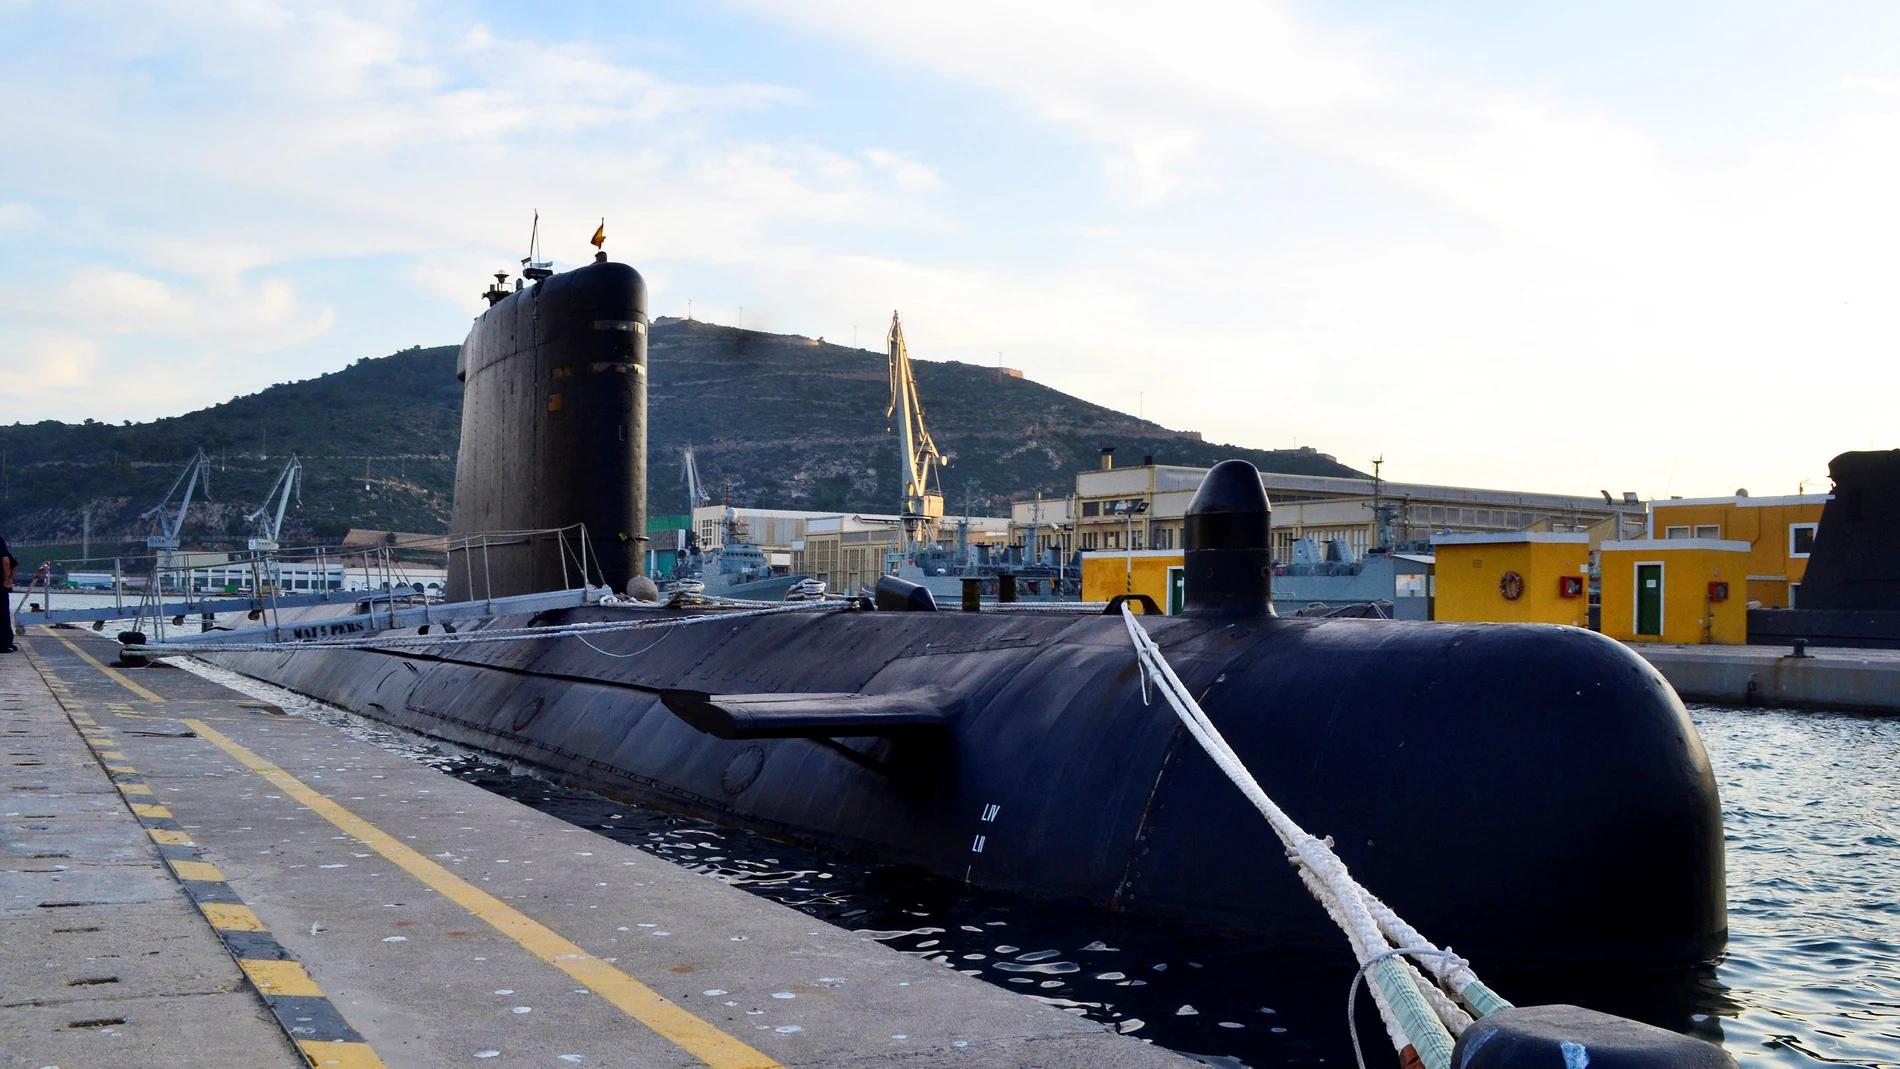 Efemérides de hoy 8 de septiembre de 2021: El Peral, primer submarino operativo del mundo